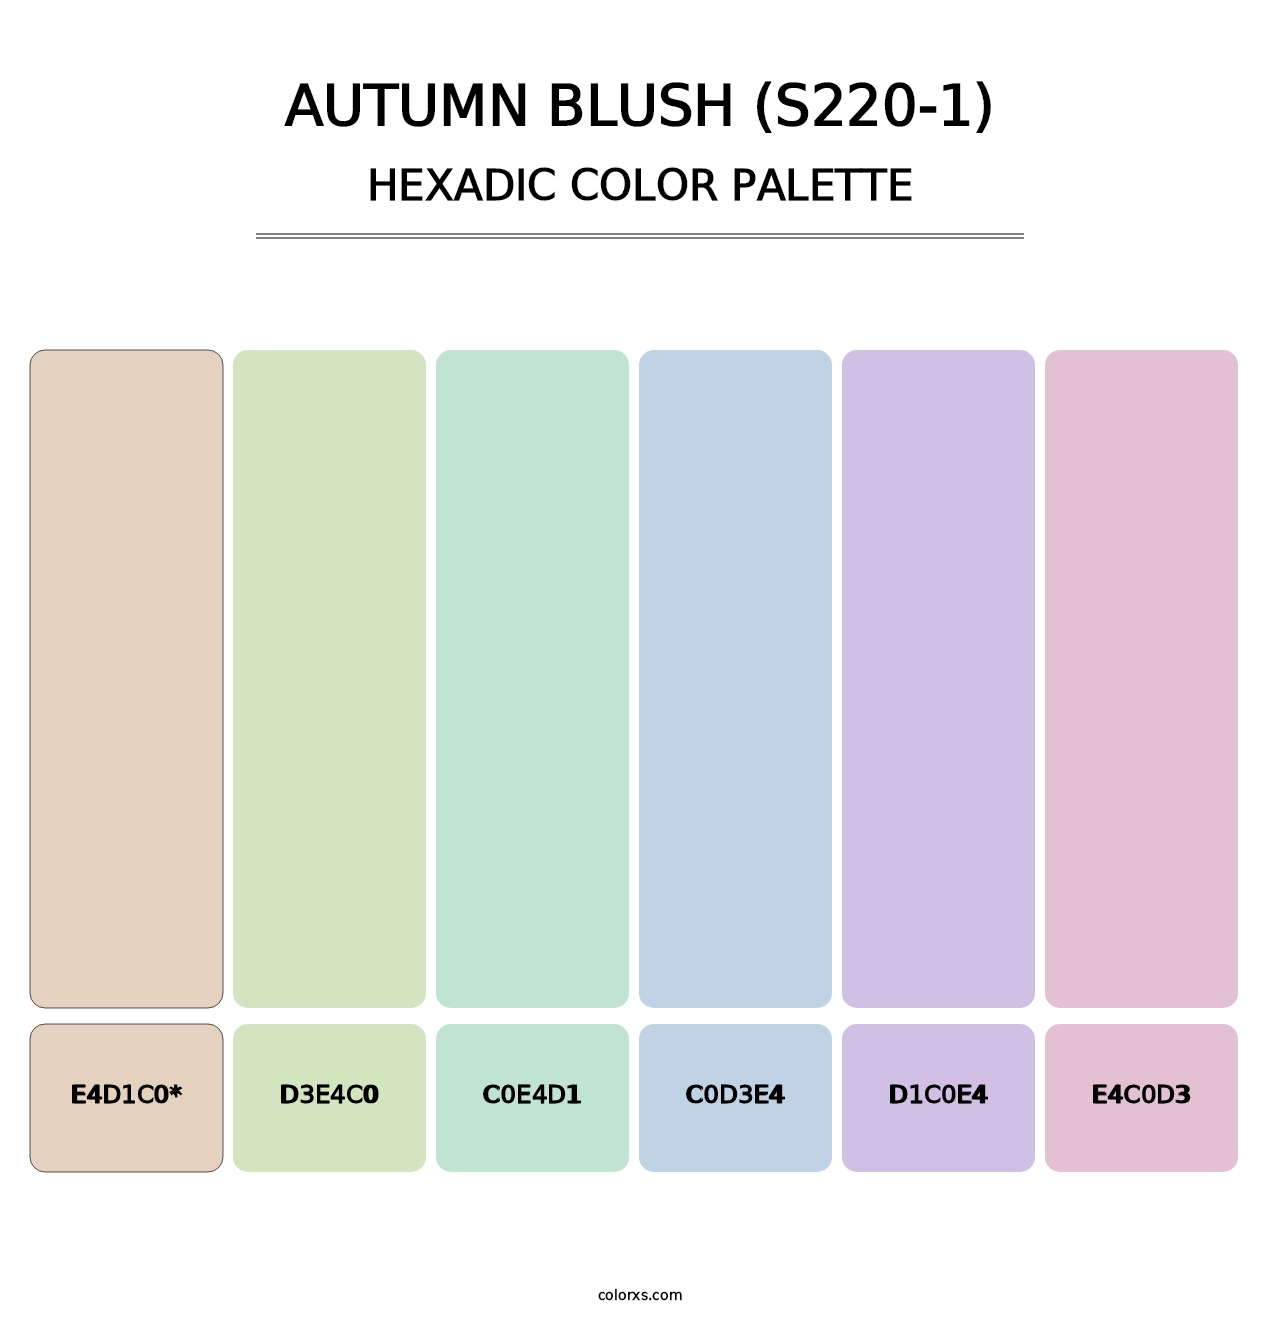 Autumn Blush (S220-1) - Hexadic Color Palette